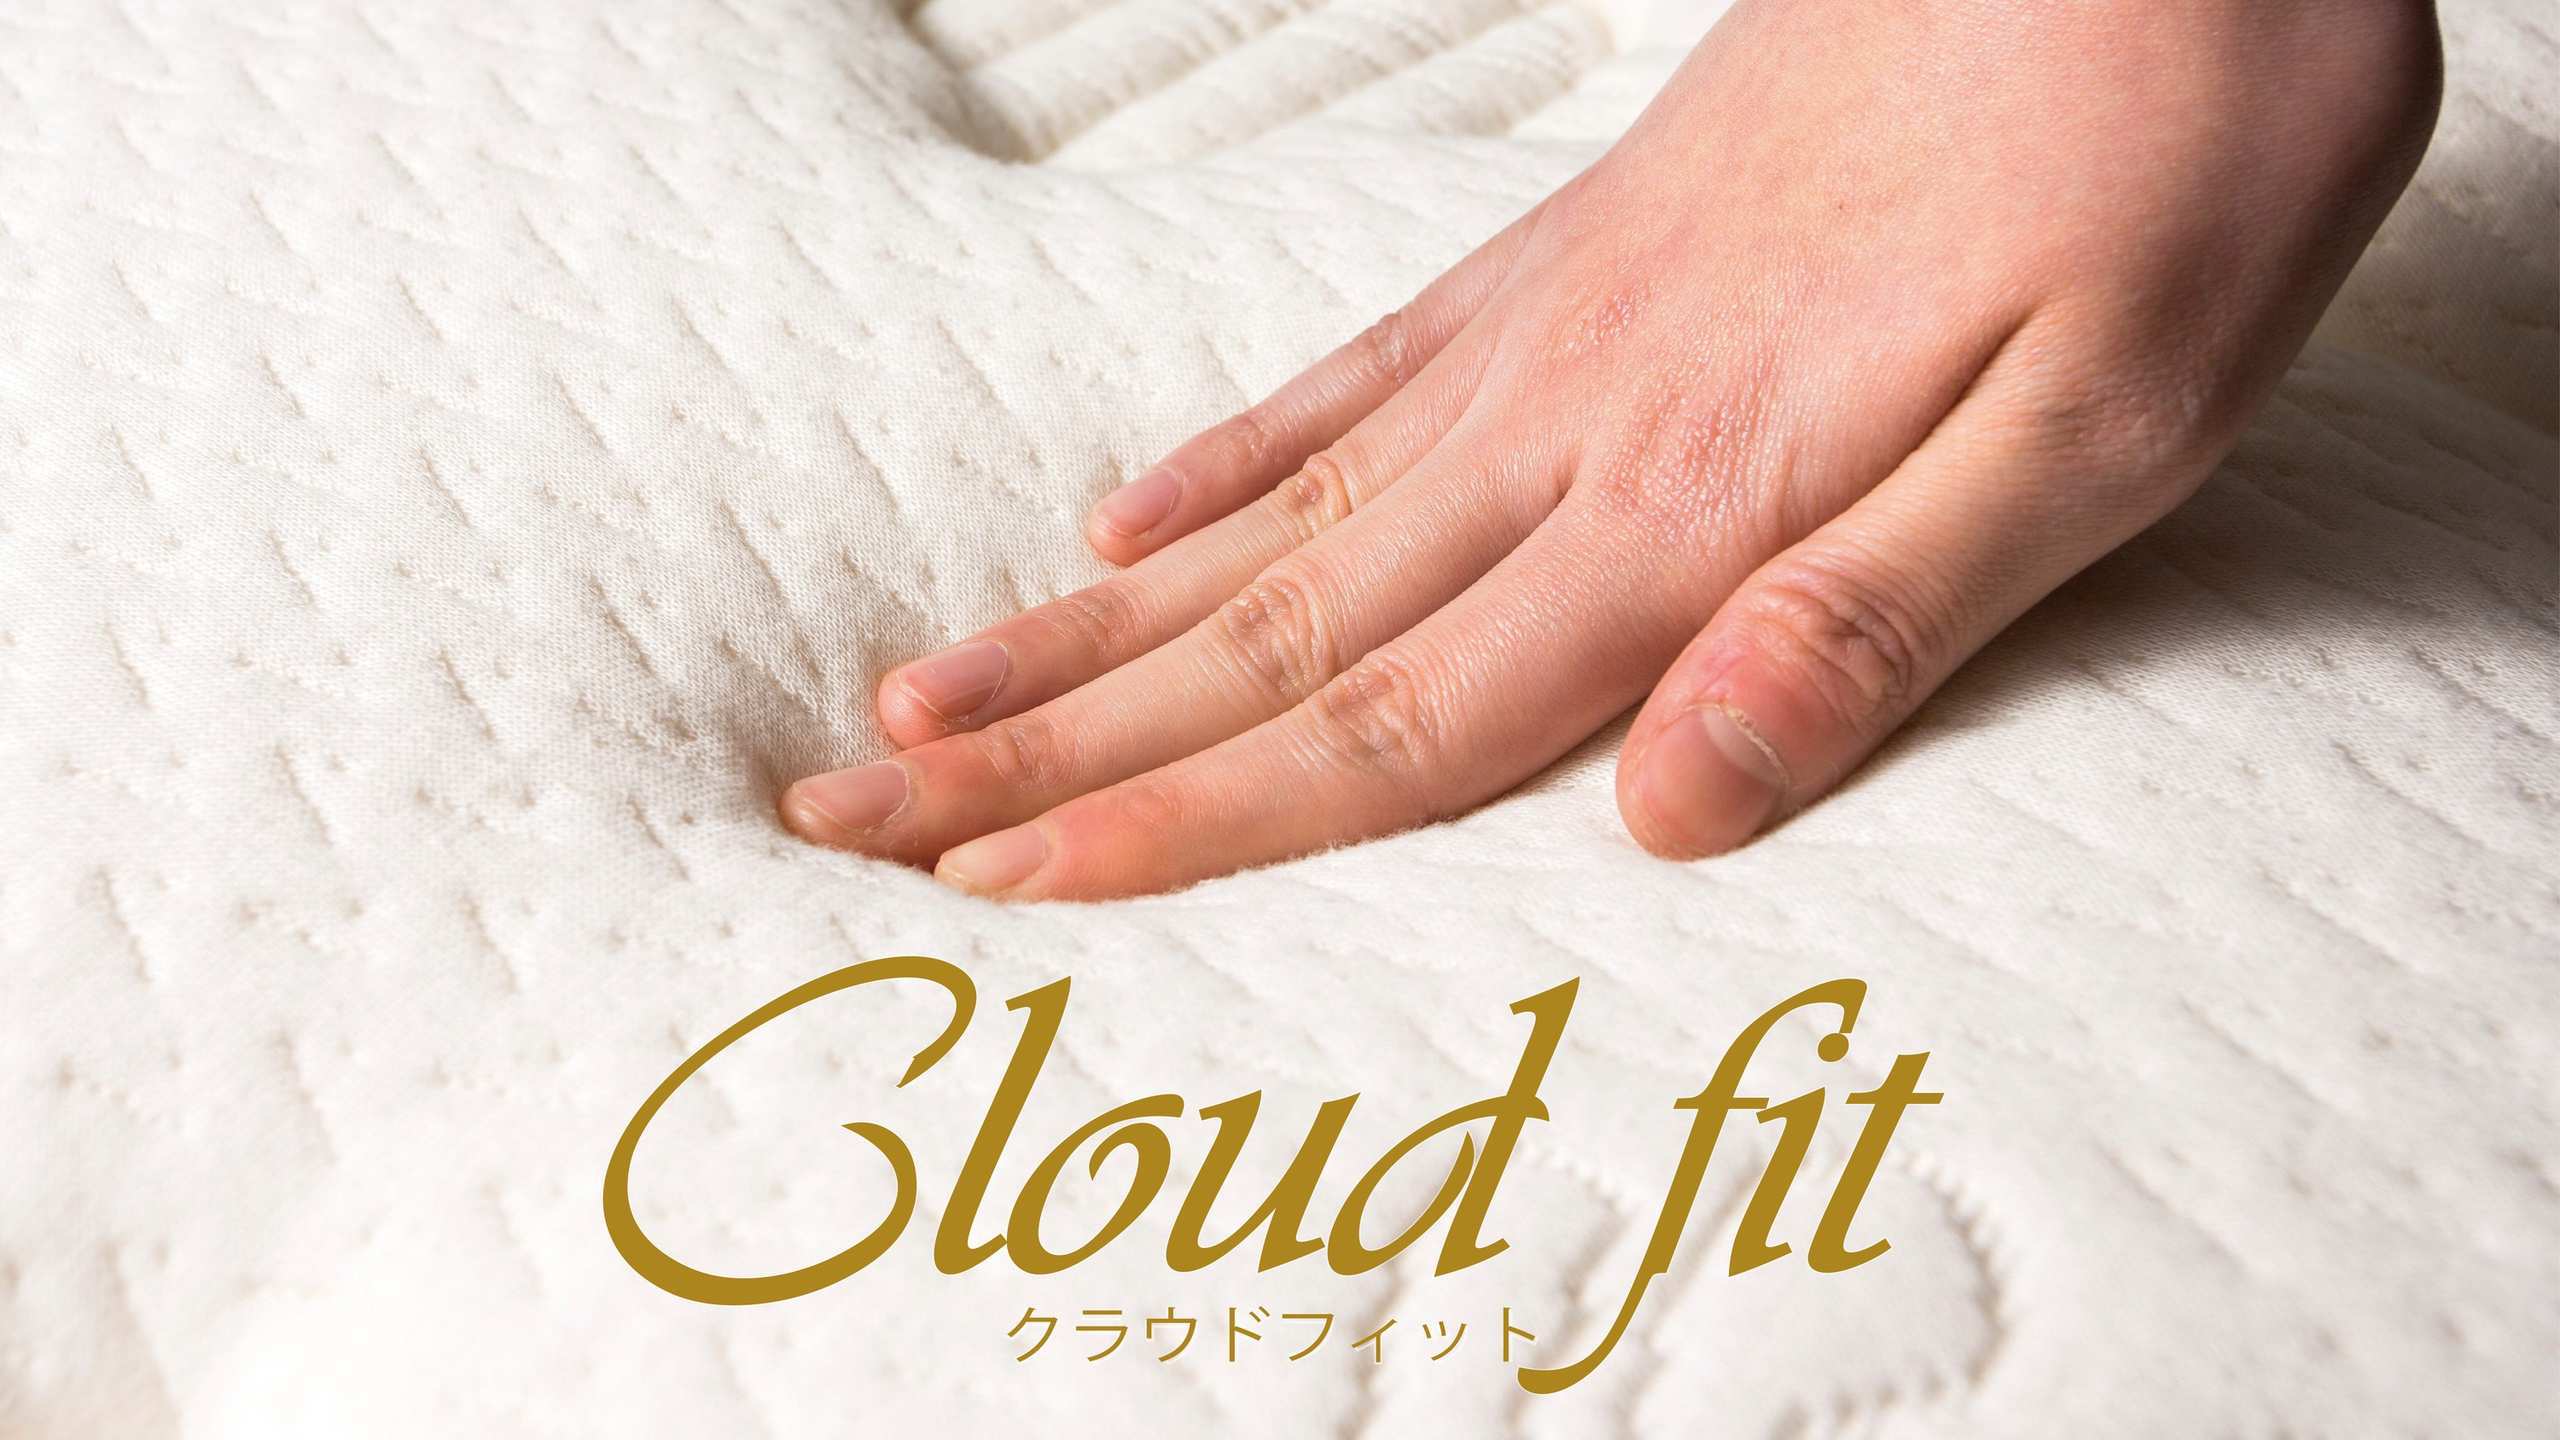 アパホテルオリジナルベッド「Cloud fit(クラウドフィット)」